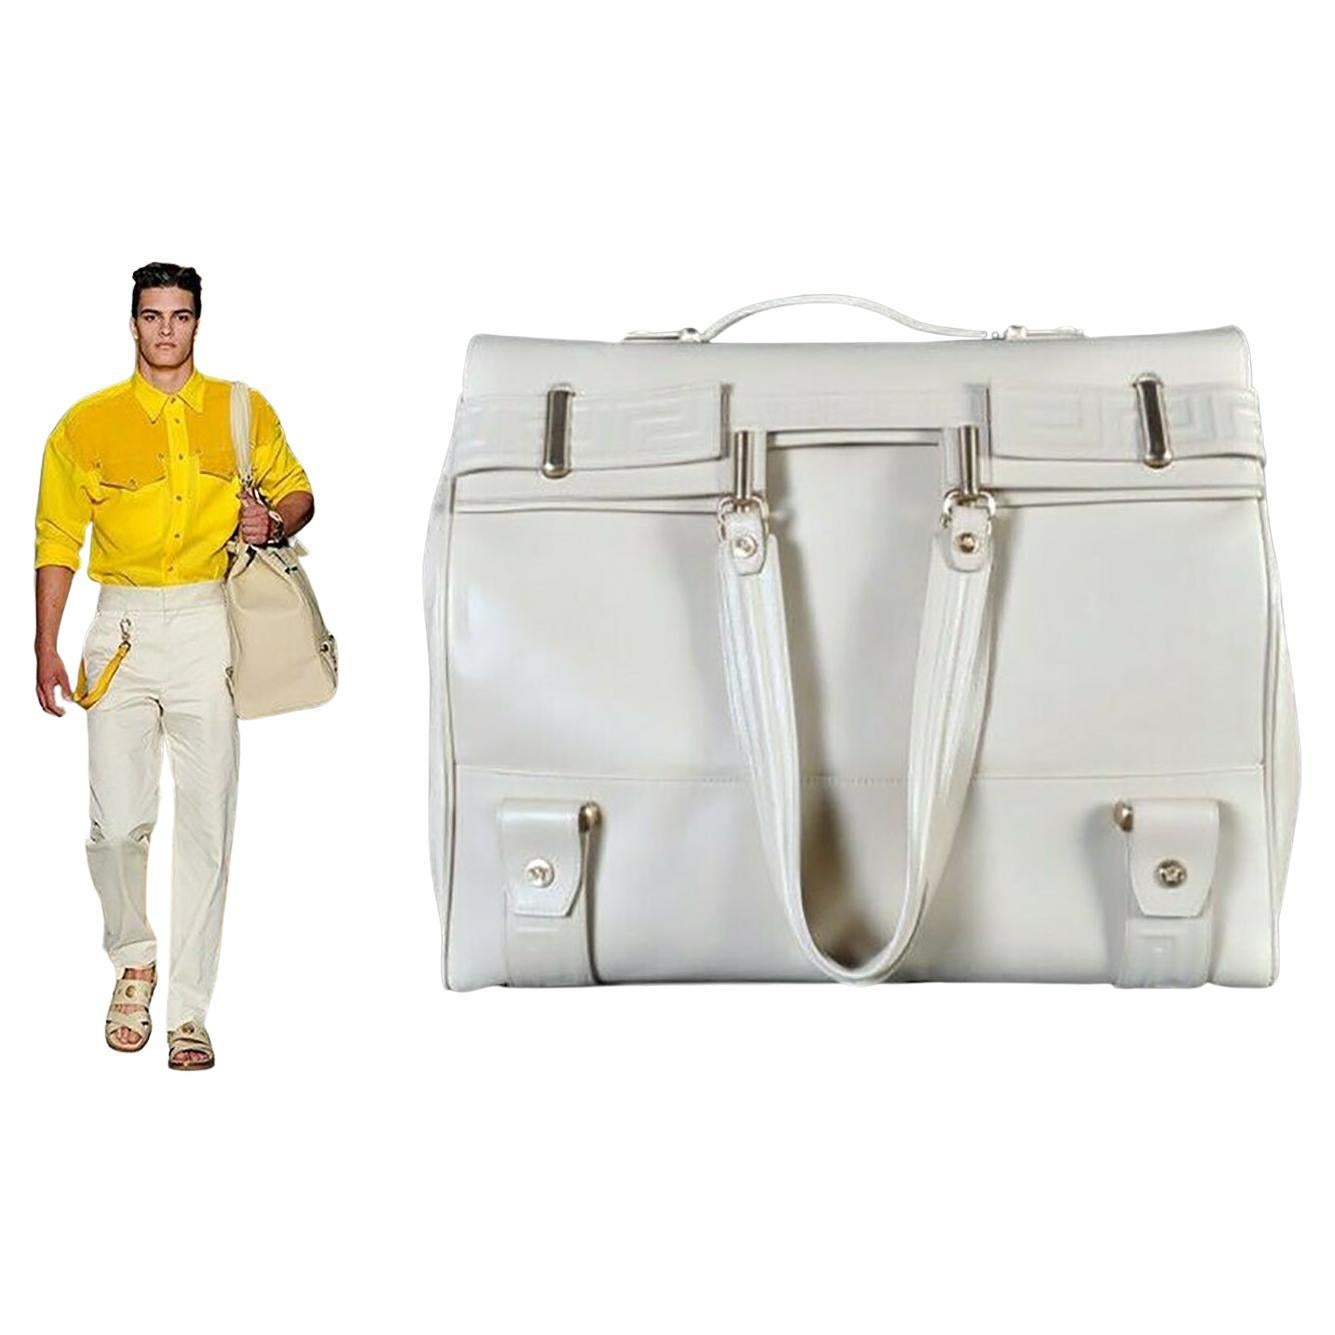 S/S 2012 Look # 15 New VERSACE Men's Travel Leather Handbag